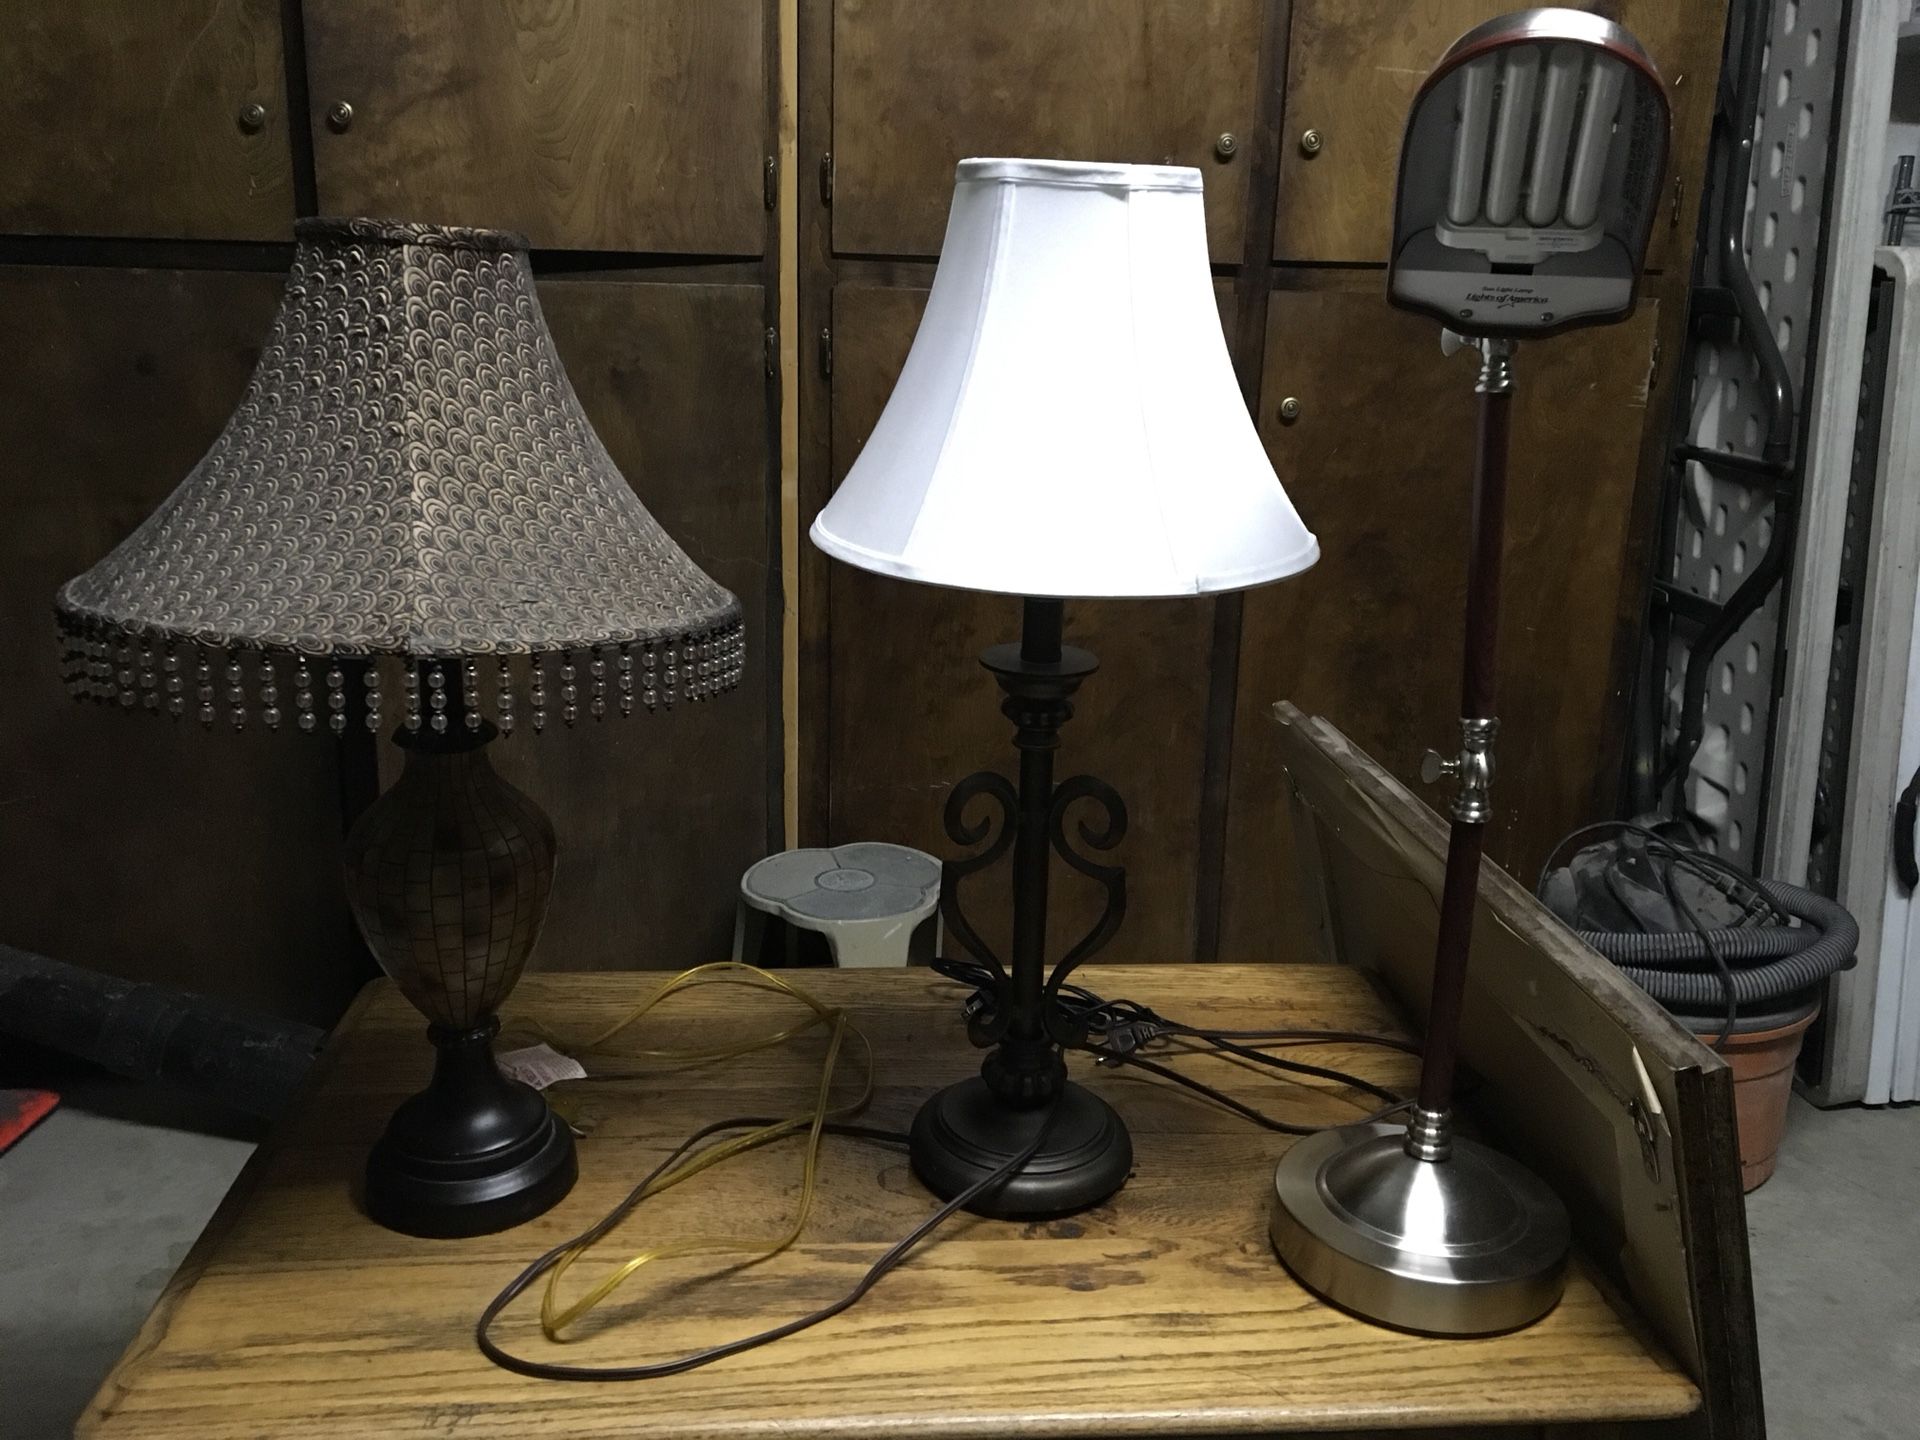 3 lamps all $25, 10 ea